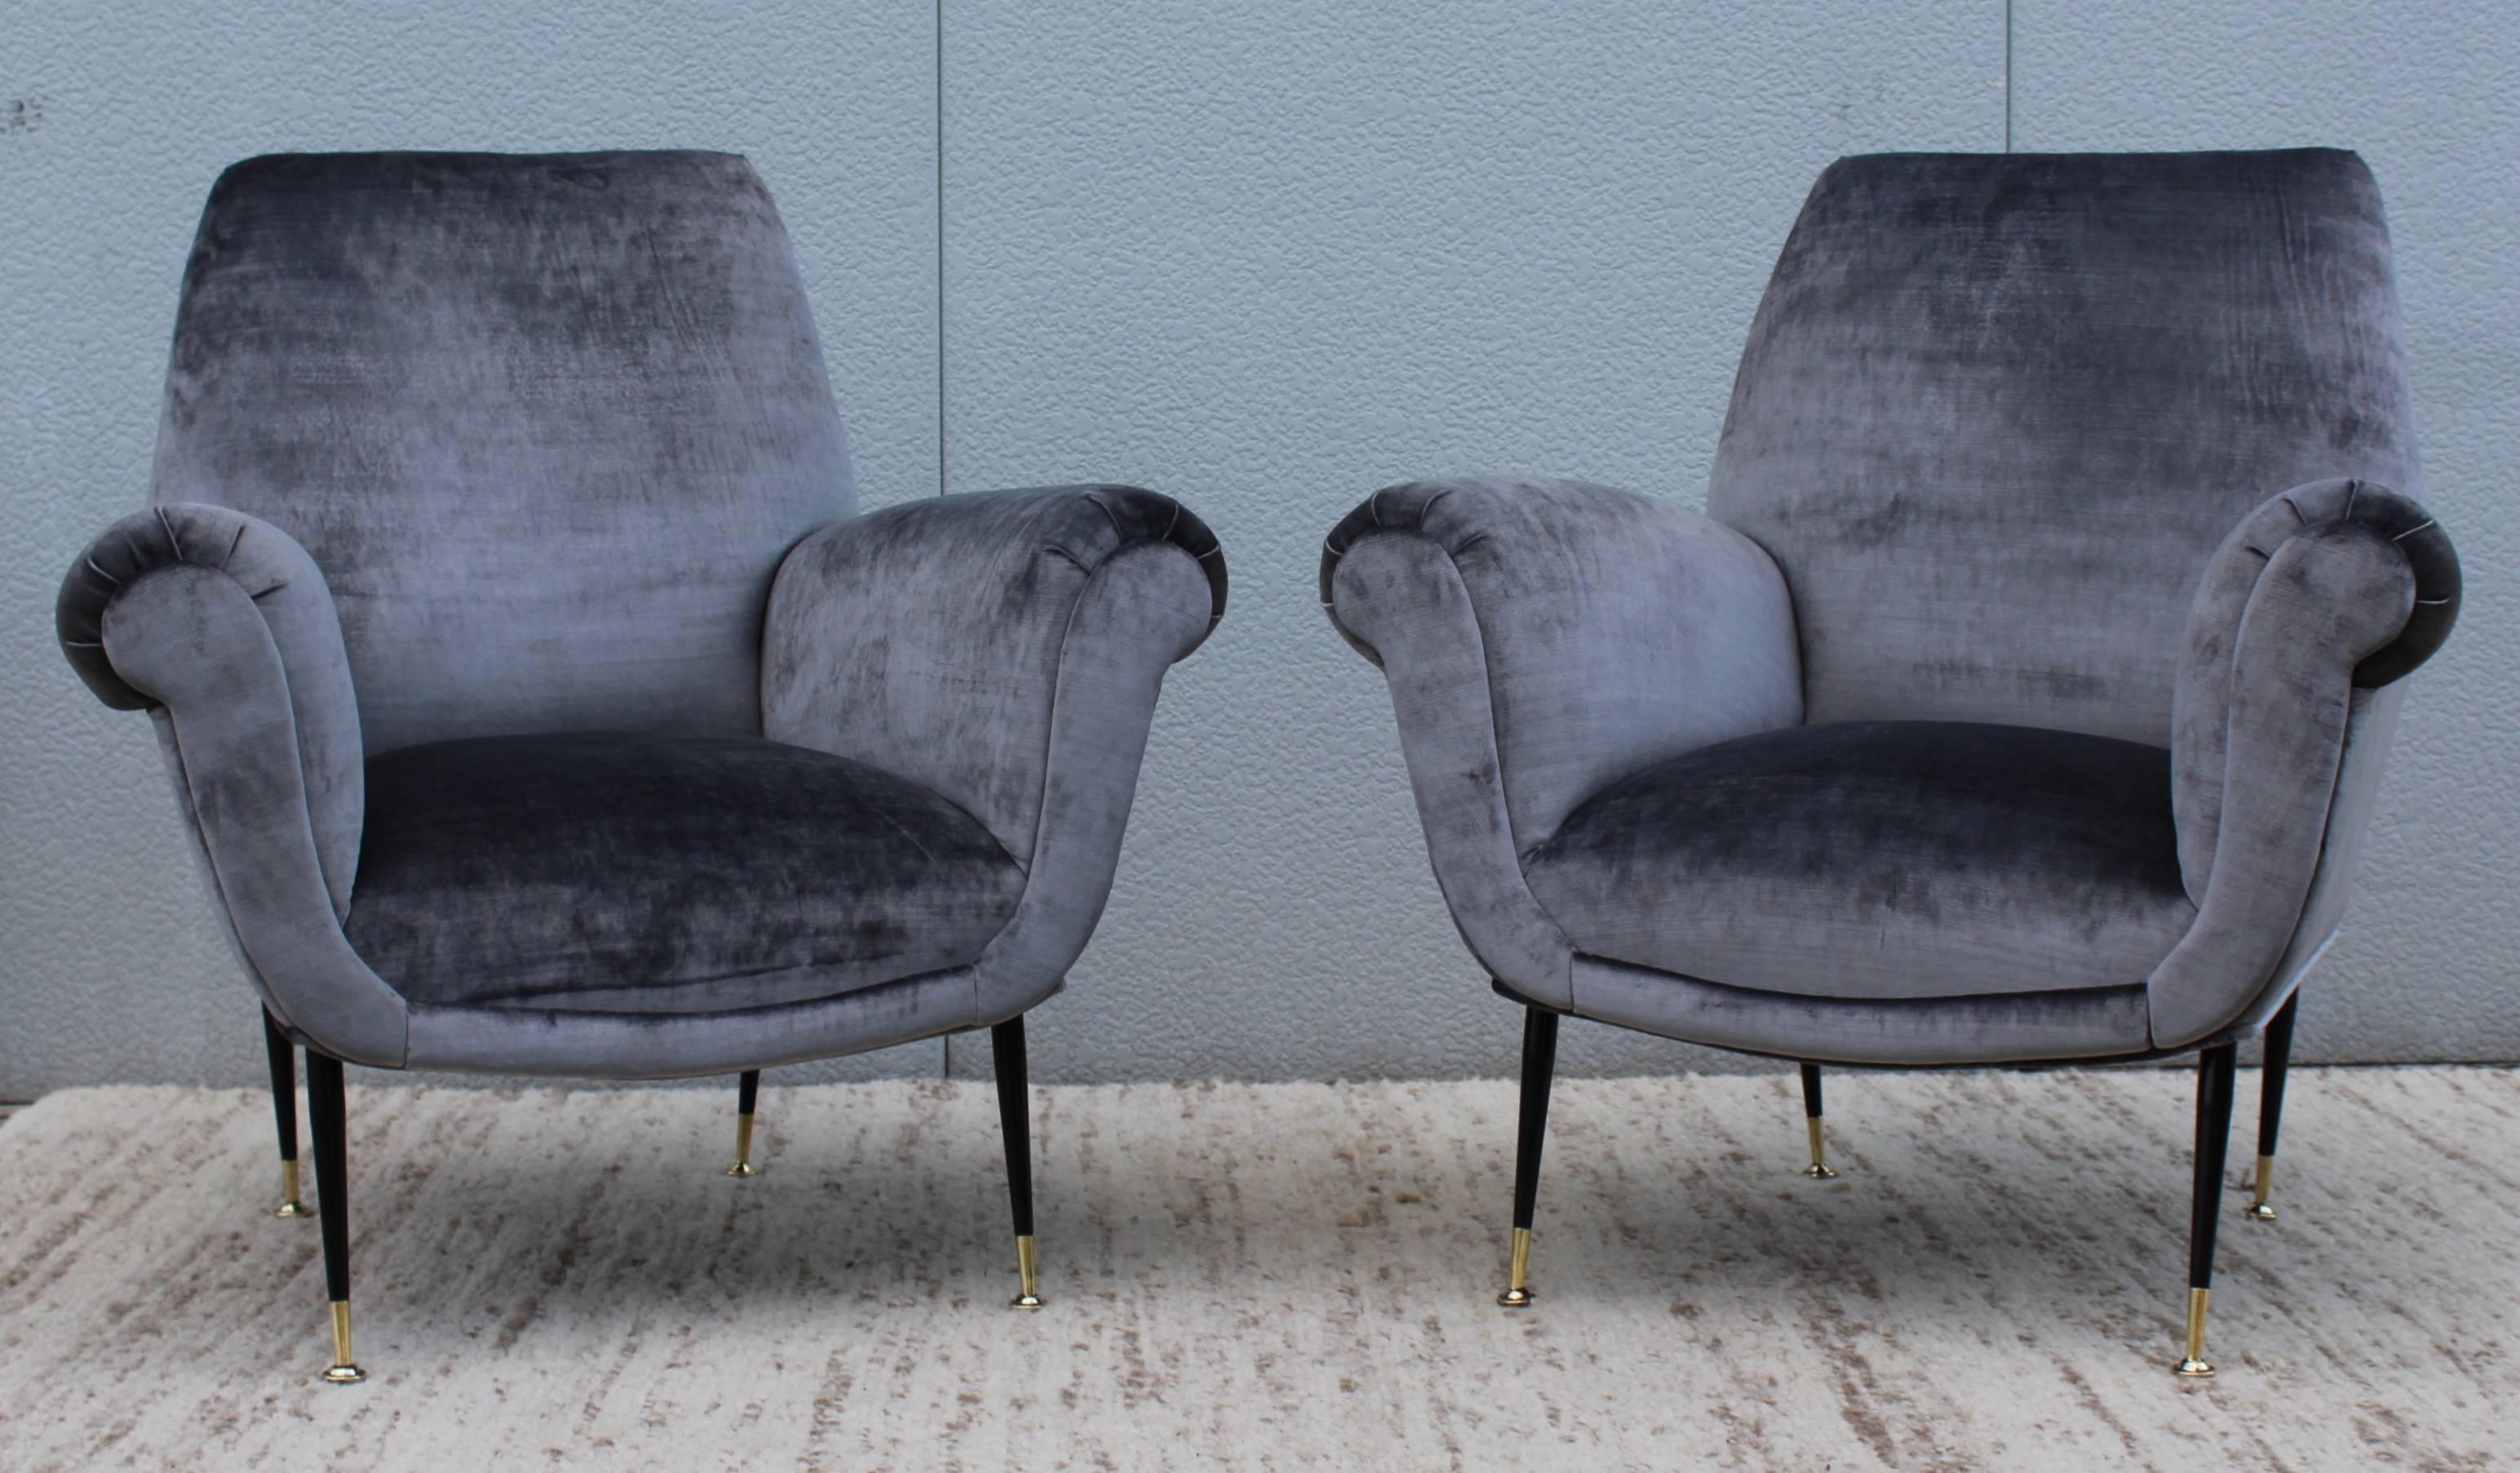 Stunning pair of 1950s Gigi Radice Italian armchairs, fully restored and newly upholstered in velvet.